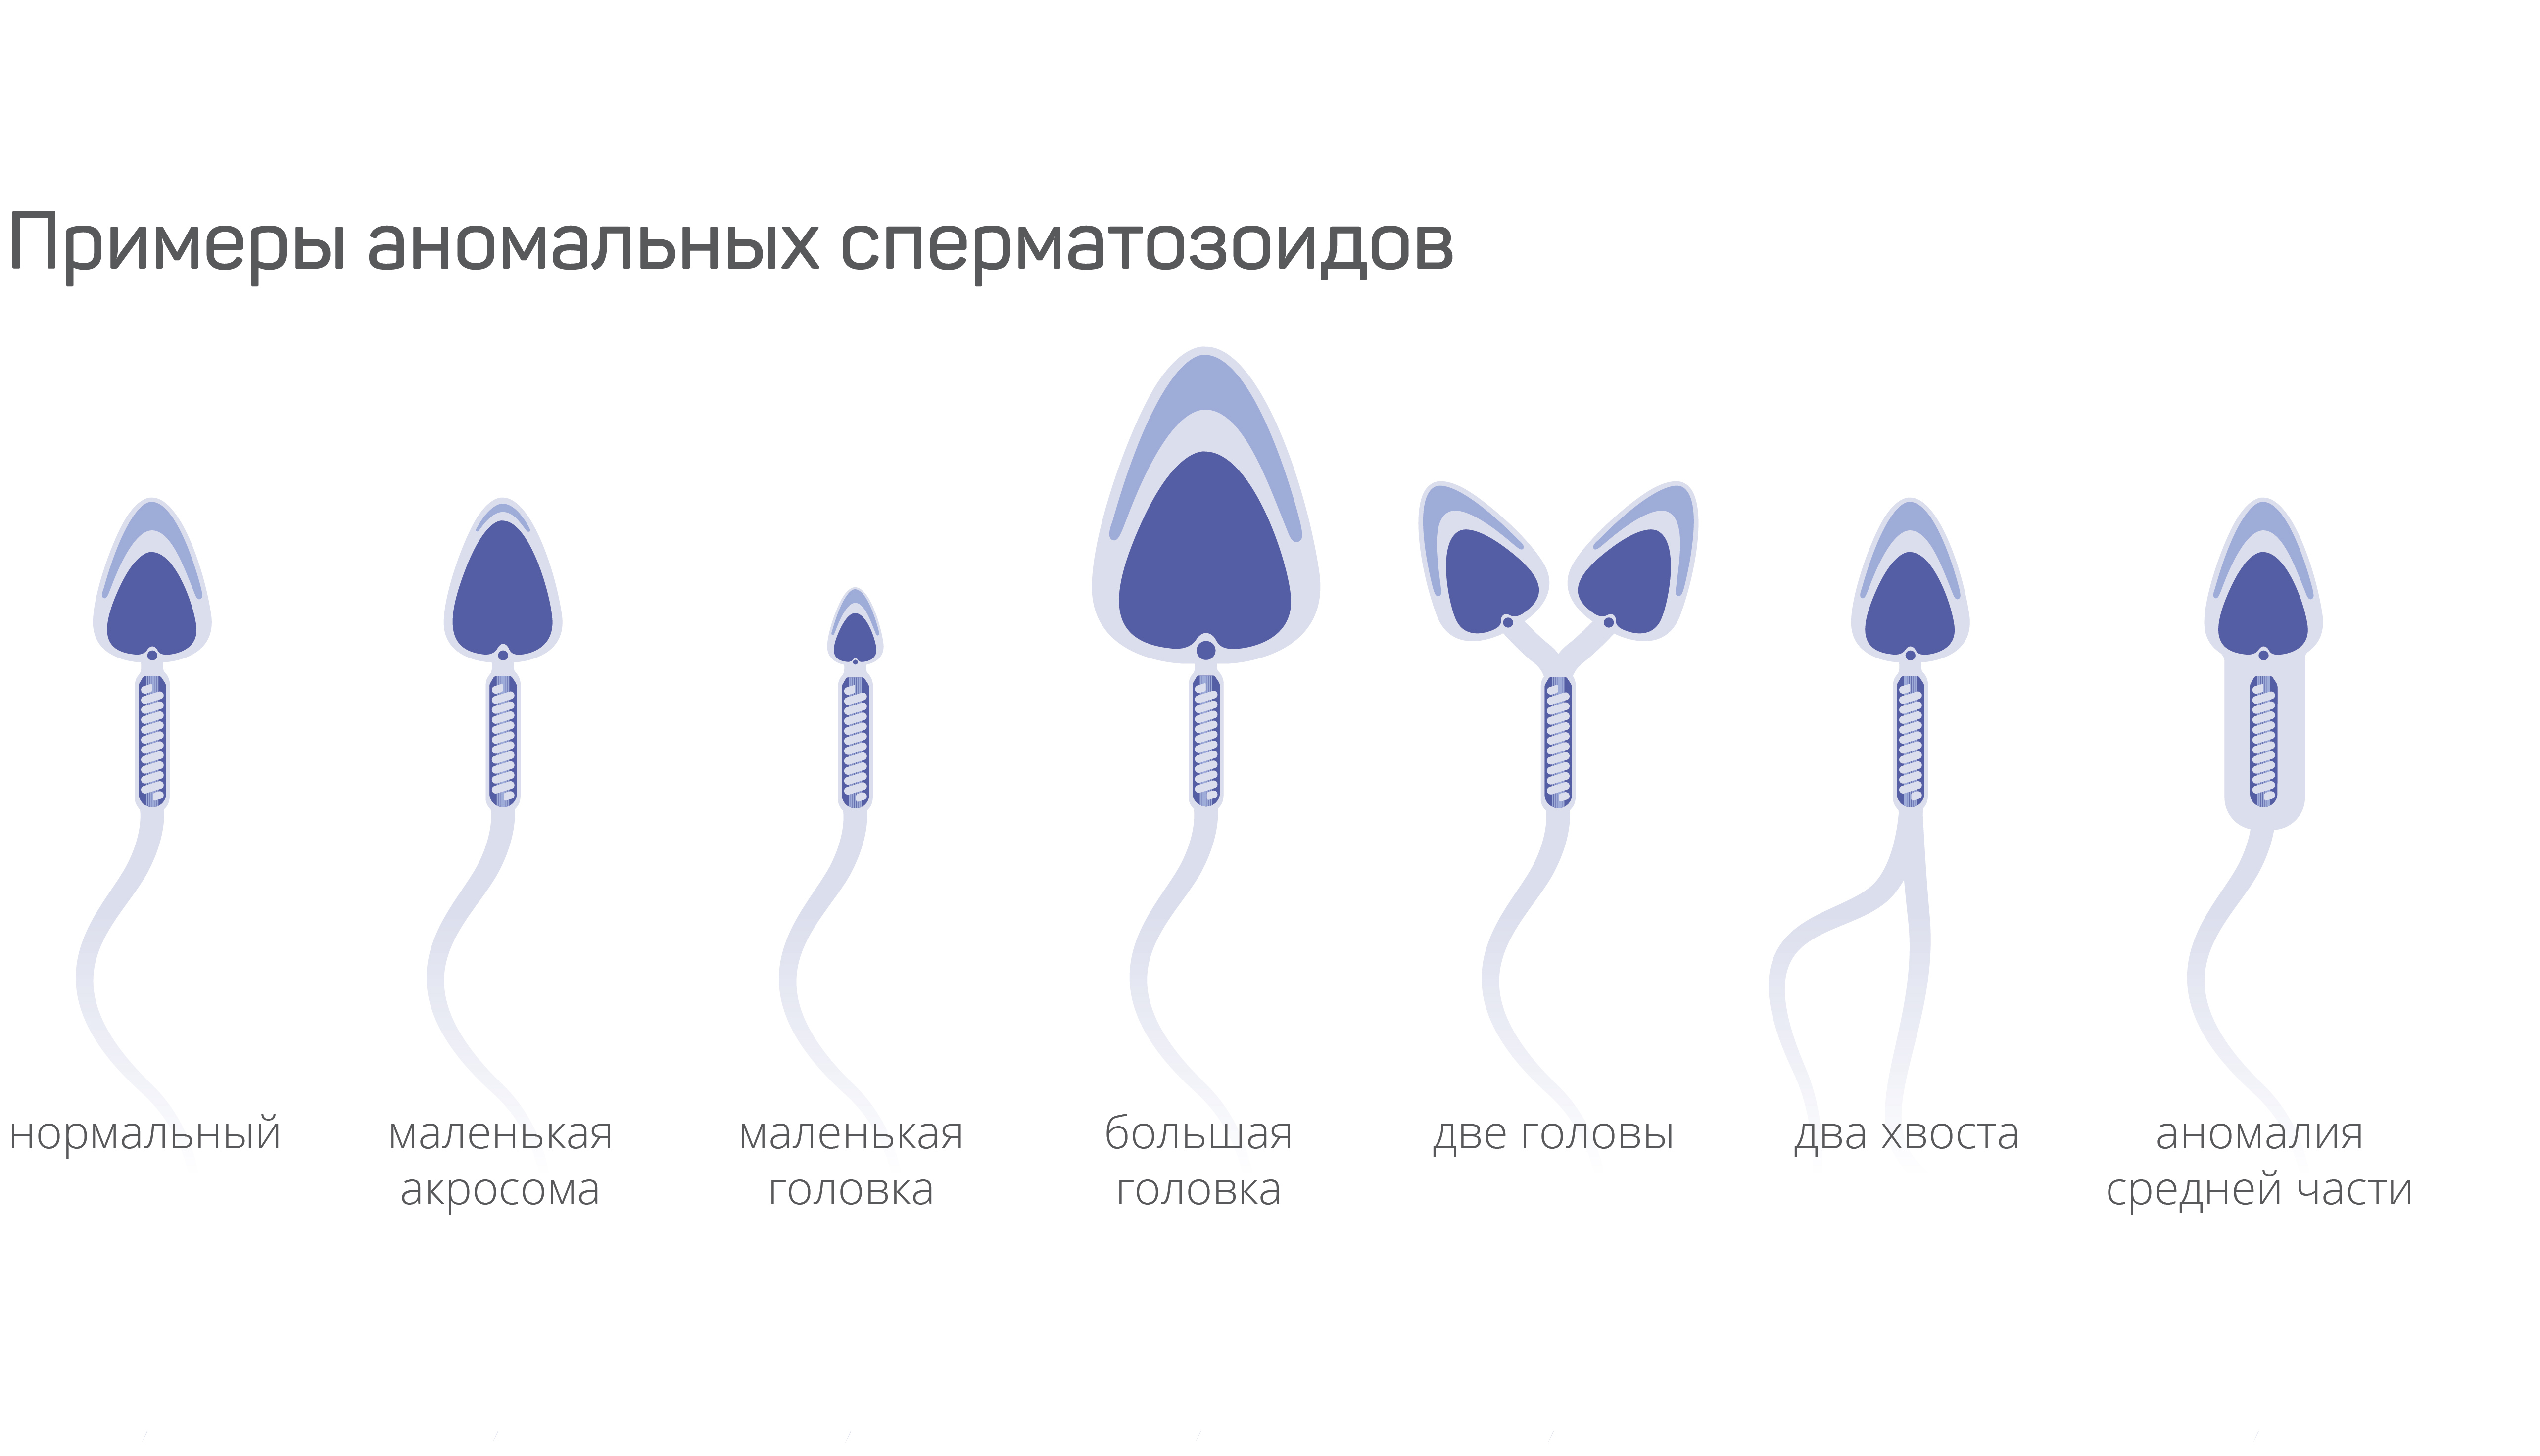 Что такое патология сперматозоида и её виды